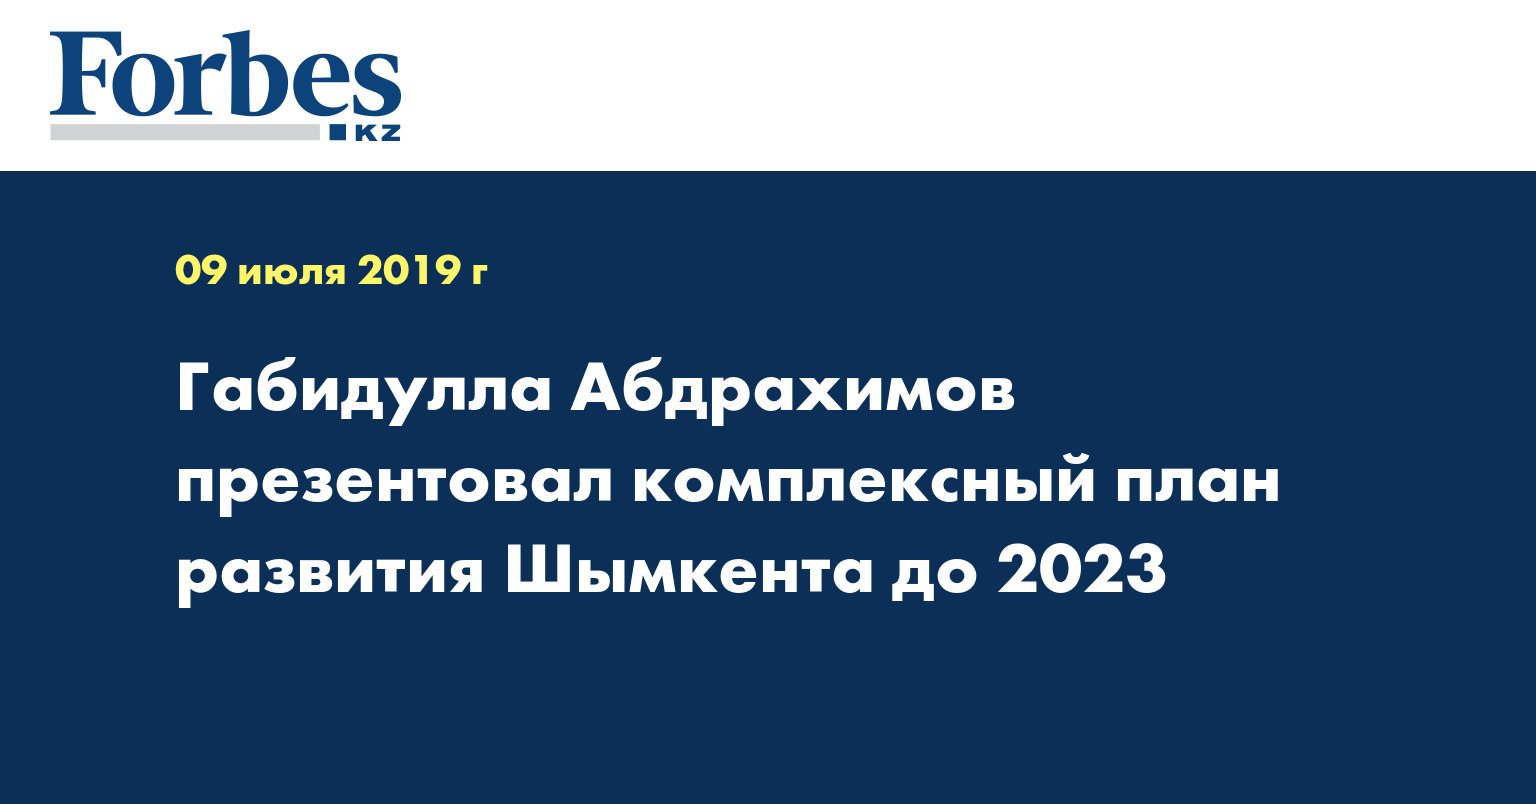 Габидулла Абдрахимов презентовал комплексный план развития Шымкента до 2023